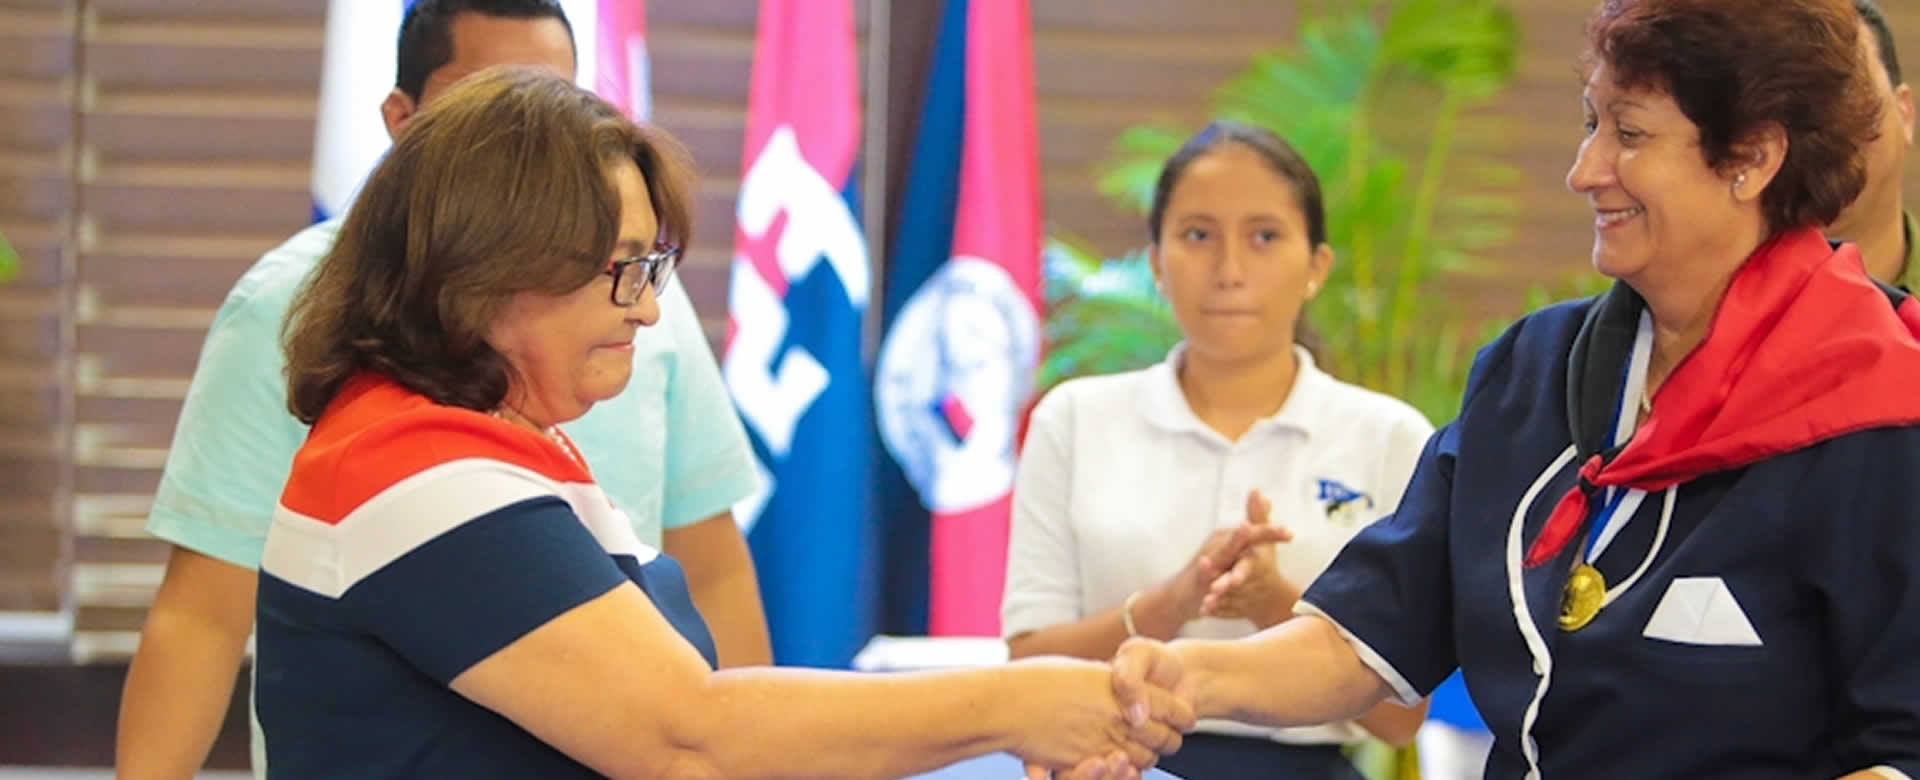 Cuba y Nicaragua firman convenio de cooperación educativa